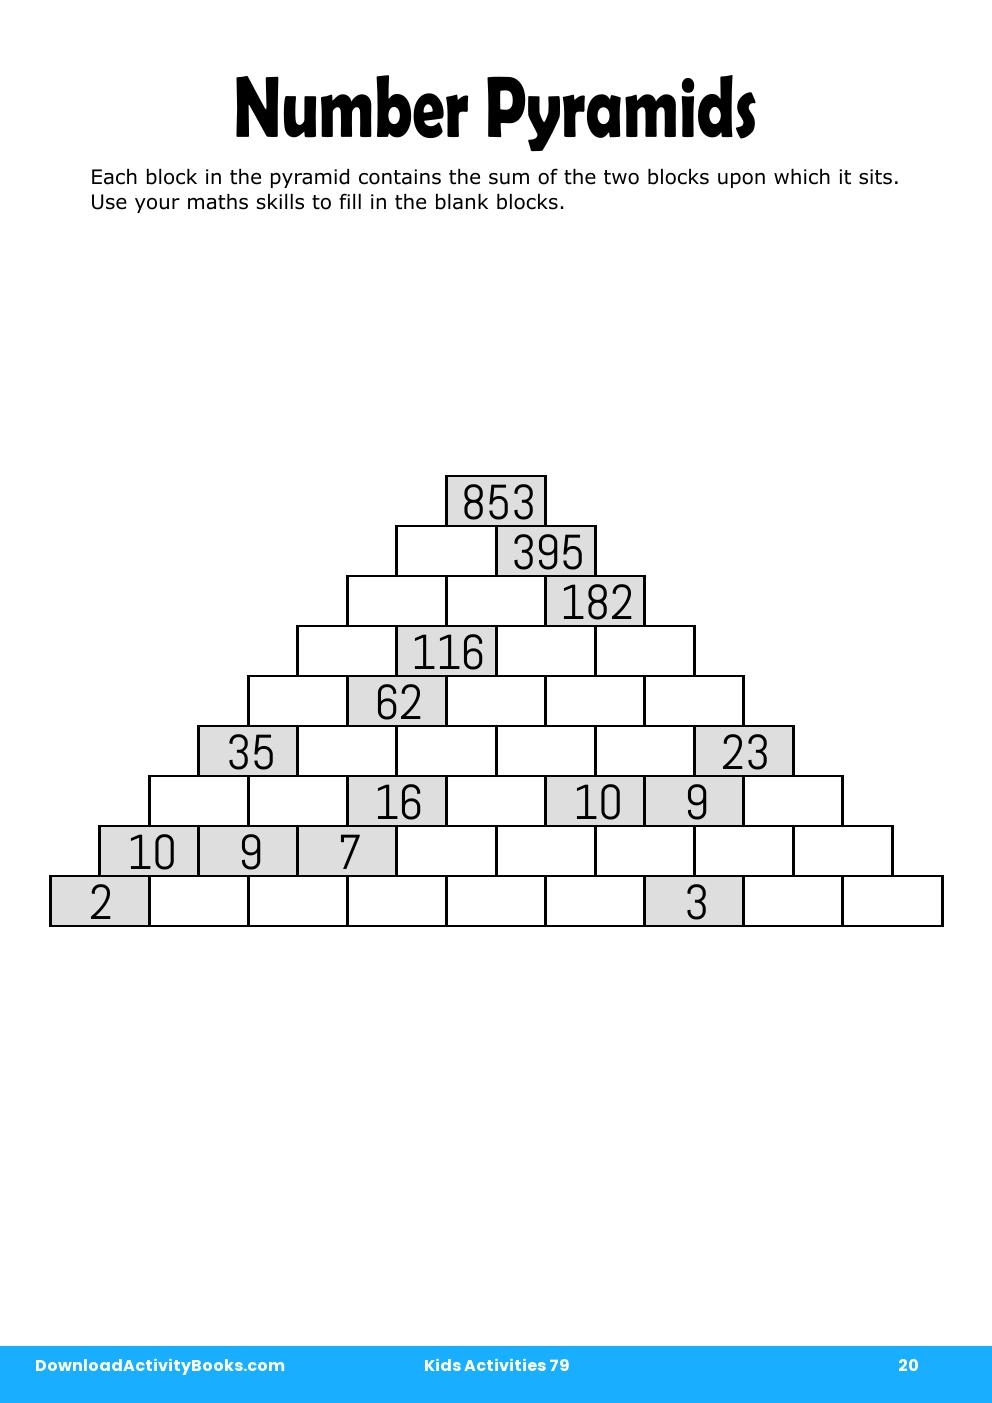 Number Pyramids in Kids Activities 79